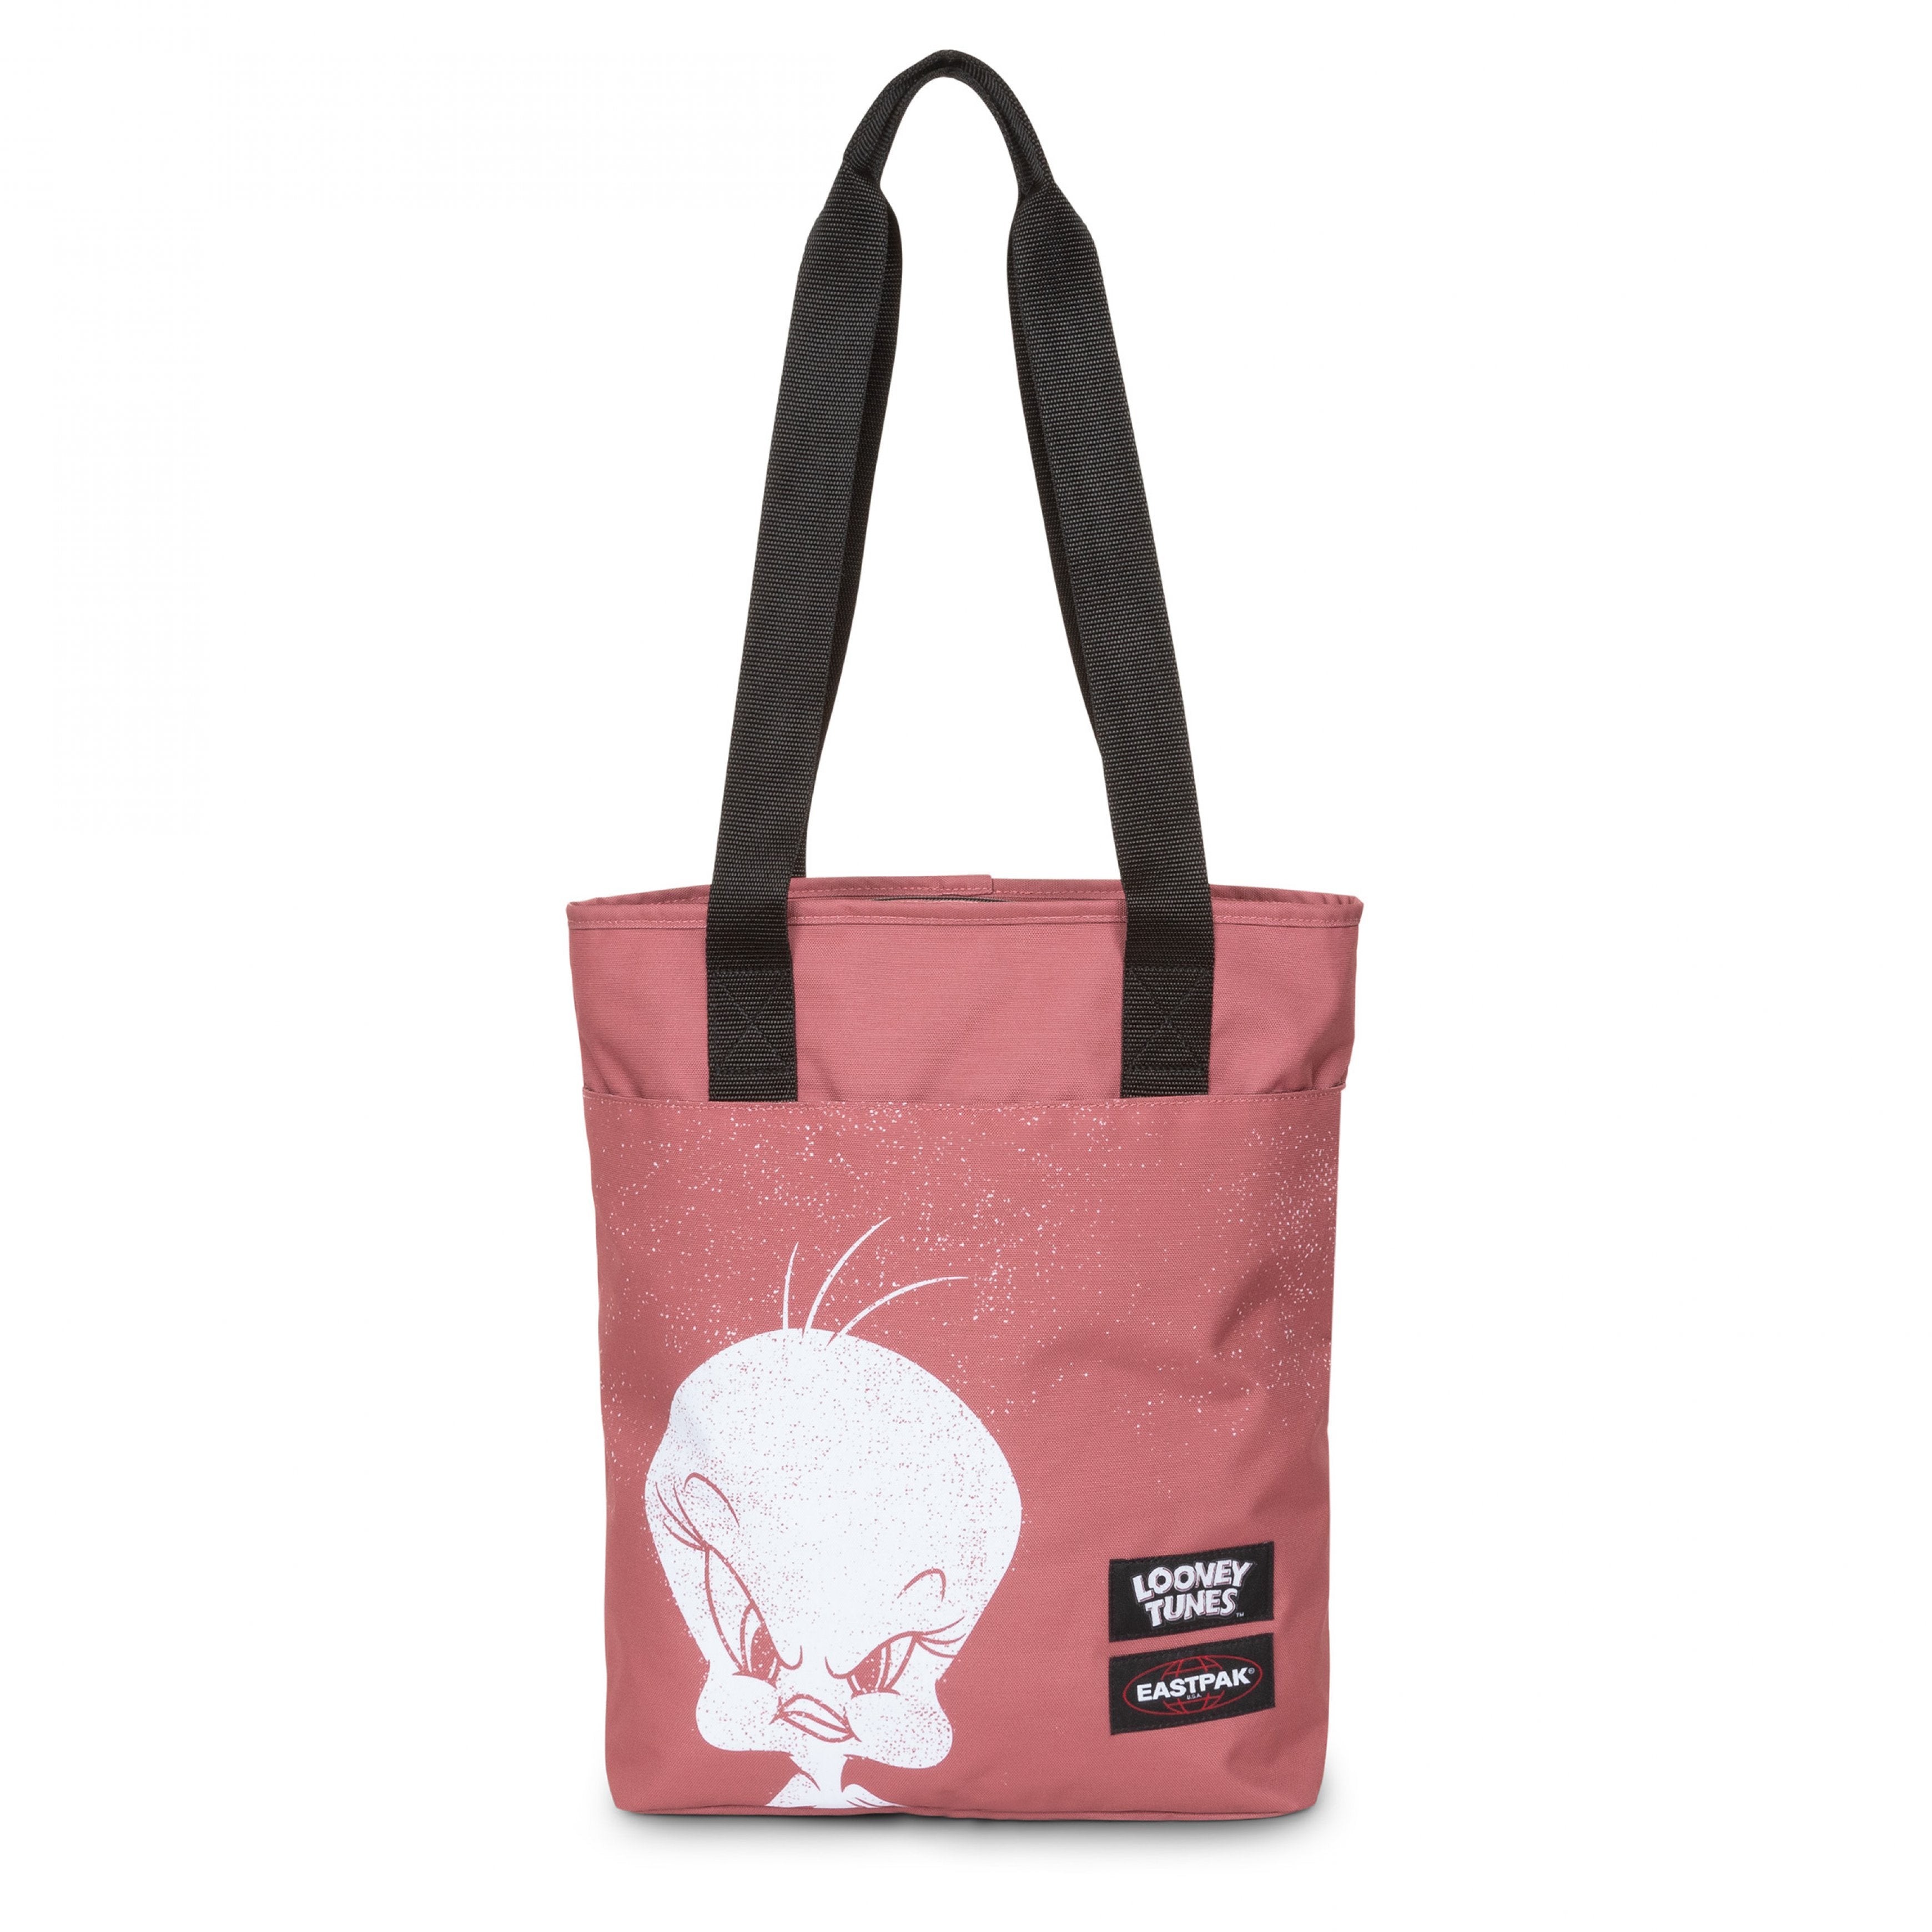 Eastpak-Shopp'R Tote-Medium Tote bag-Tweety-EK0A5BIC9J31